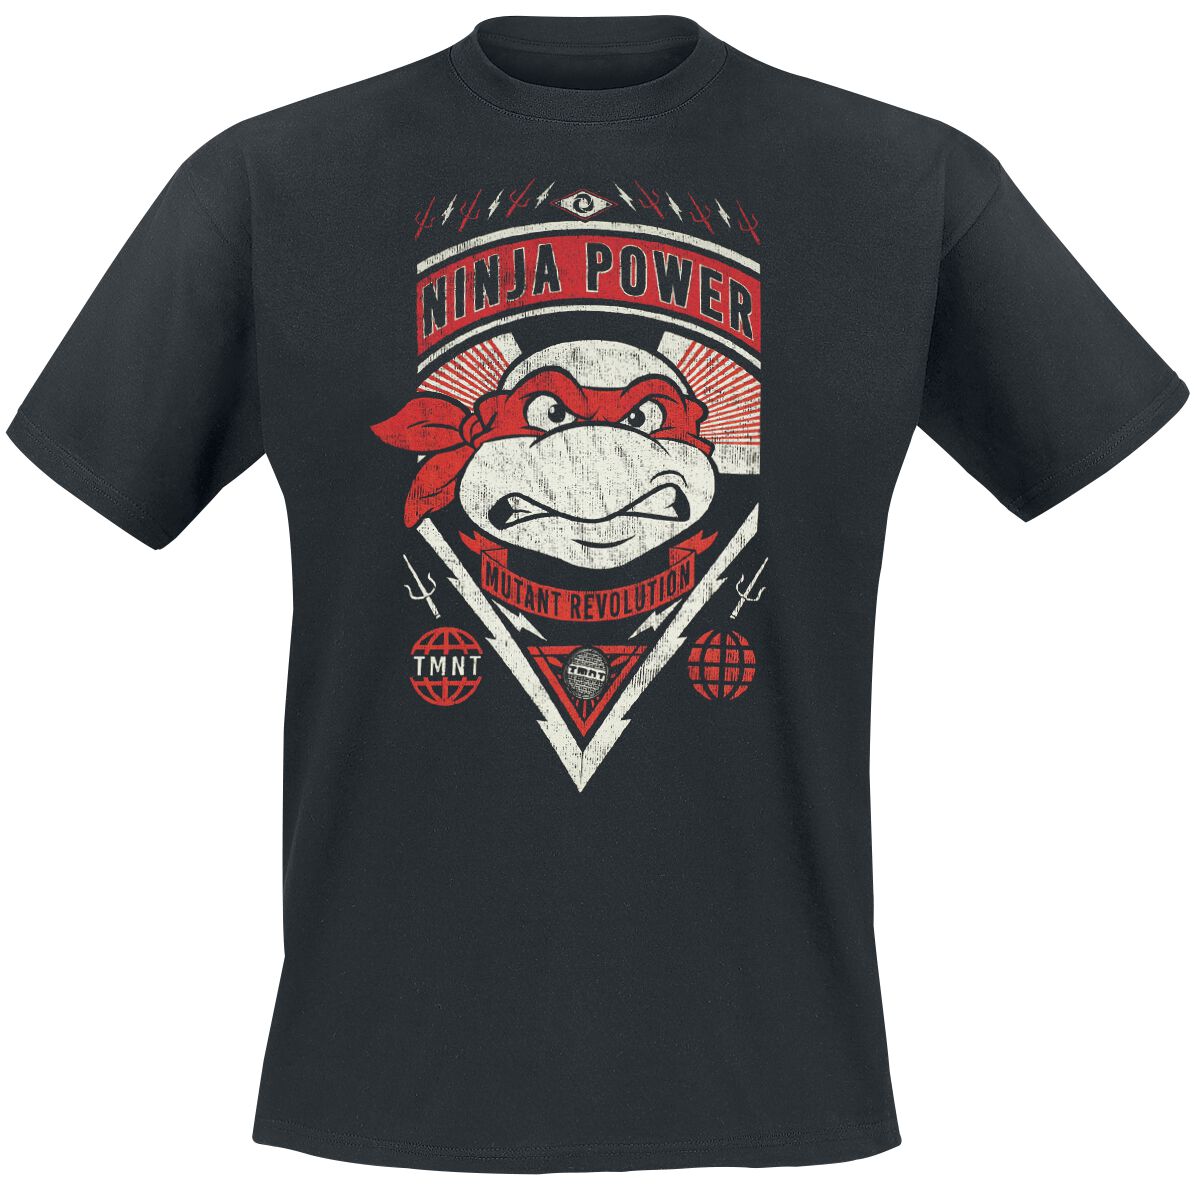 Teenage Mutant Ninja Turtles T-Shirt - Raphael - Ninja Power - S bis XXL - für Männer - Größe L - schwarz  - Lizenzierter Fanartikel